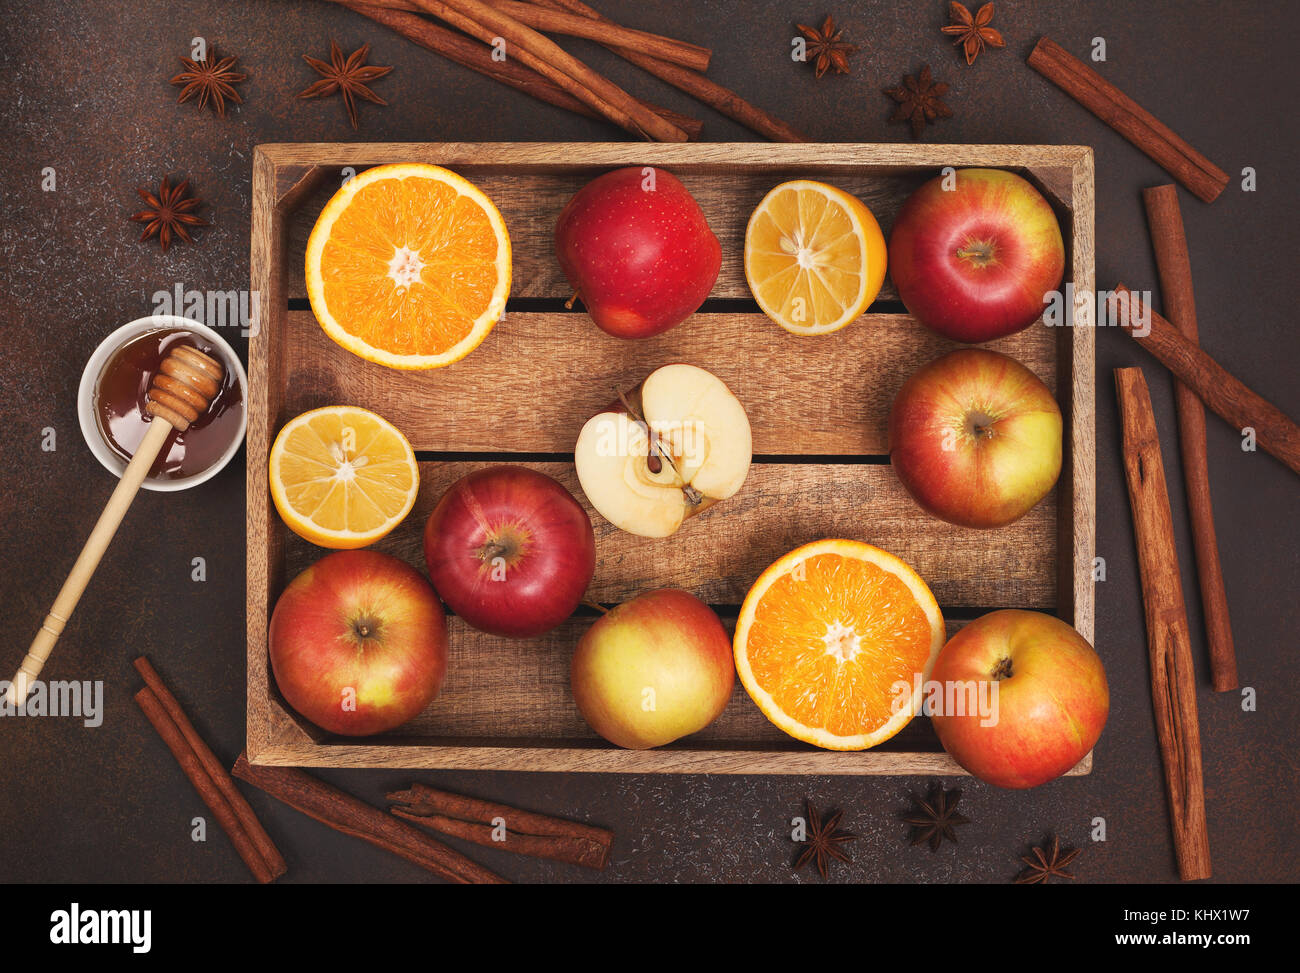 Ingrédients pour boissons d'hiver (vin chaud, punch, thé) : pommes, oranges, citrons et d'épices sur un fond sombre. Vue de dessus. Banque D'Images